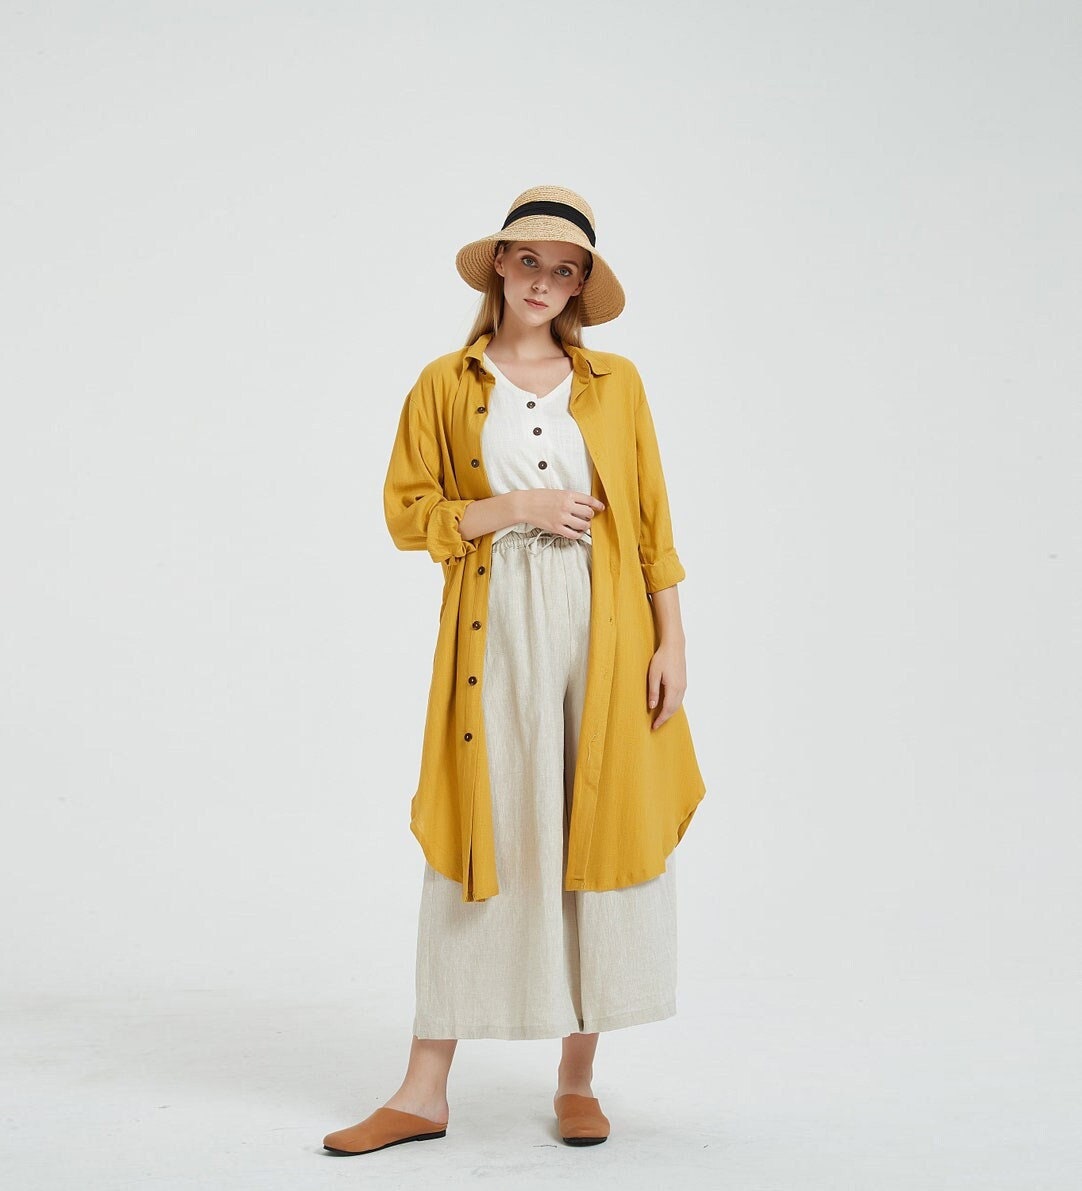 Frauen Leinenhemd Kleid Leinen Maxi Frühling Oversize Locker Lässig Etuikleid Tunika Longshirt Plus Size Bekleidung R1 von Youga